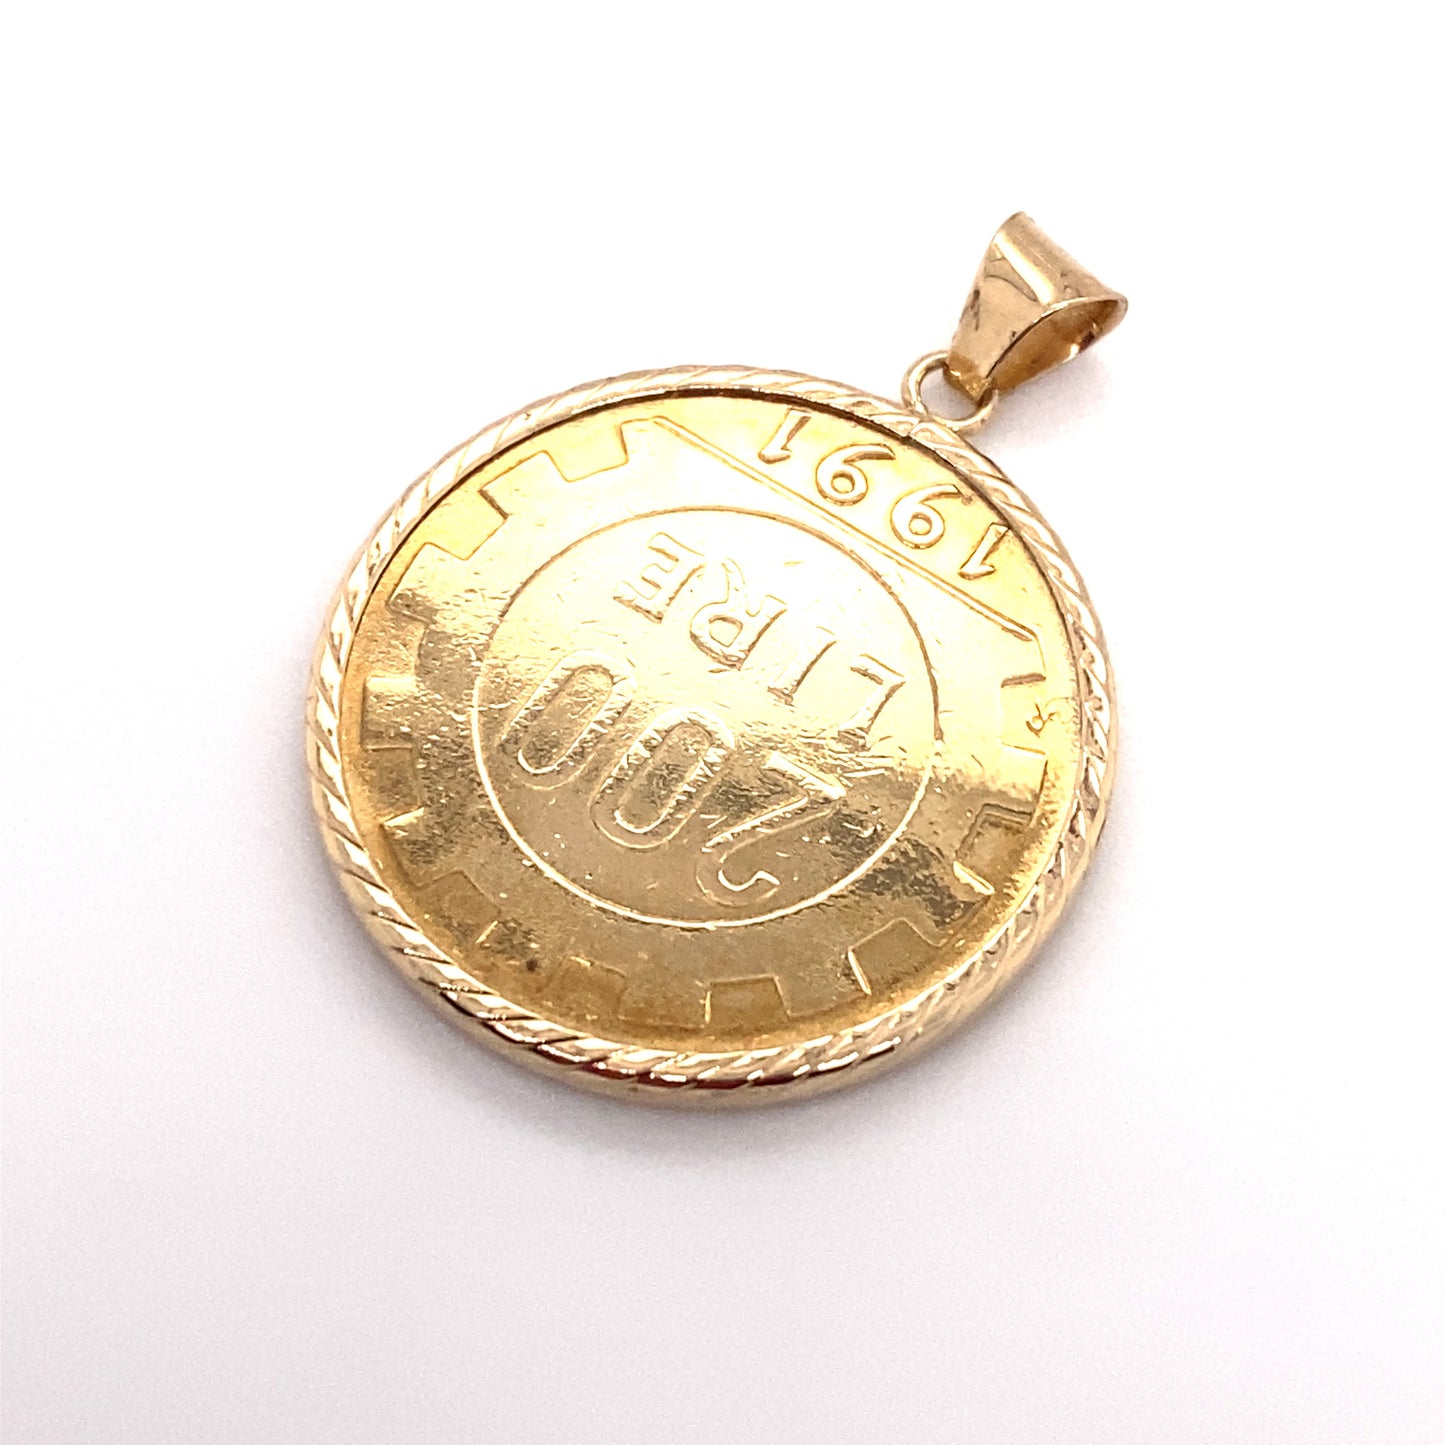 Circa 1990s Italian 200 Lira Gold Coin Pendant in 14K Gold